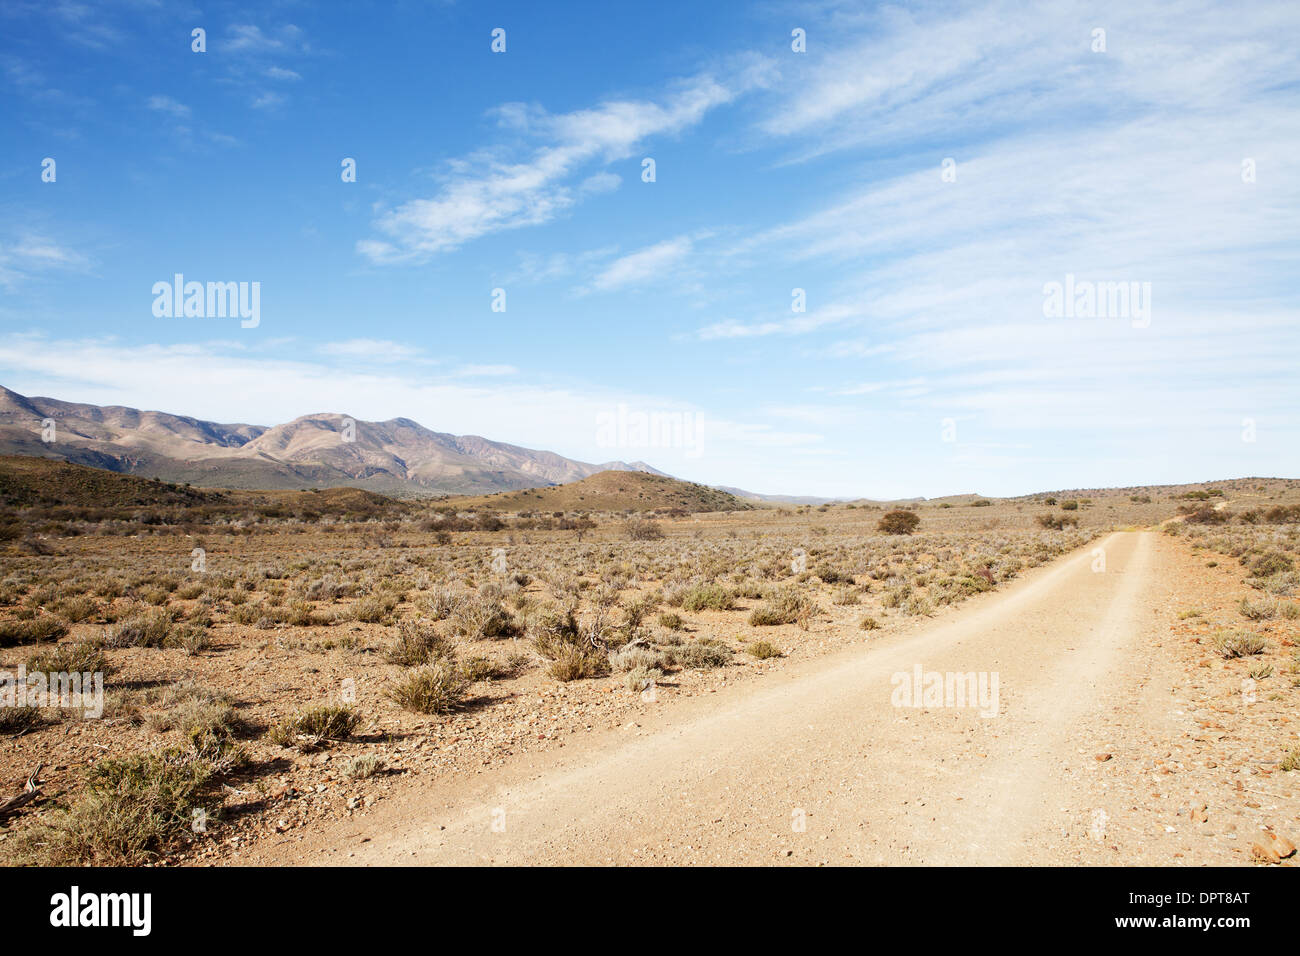 Strada sterrata in secca semi-regione desertica che conduce lontano dal visualizzatore Foto Stock